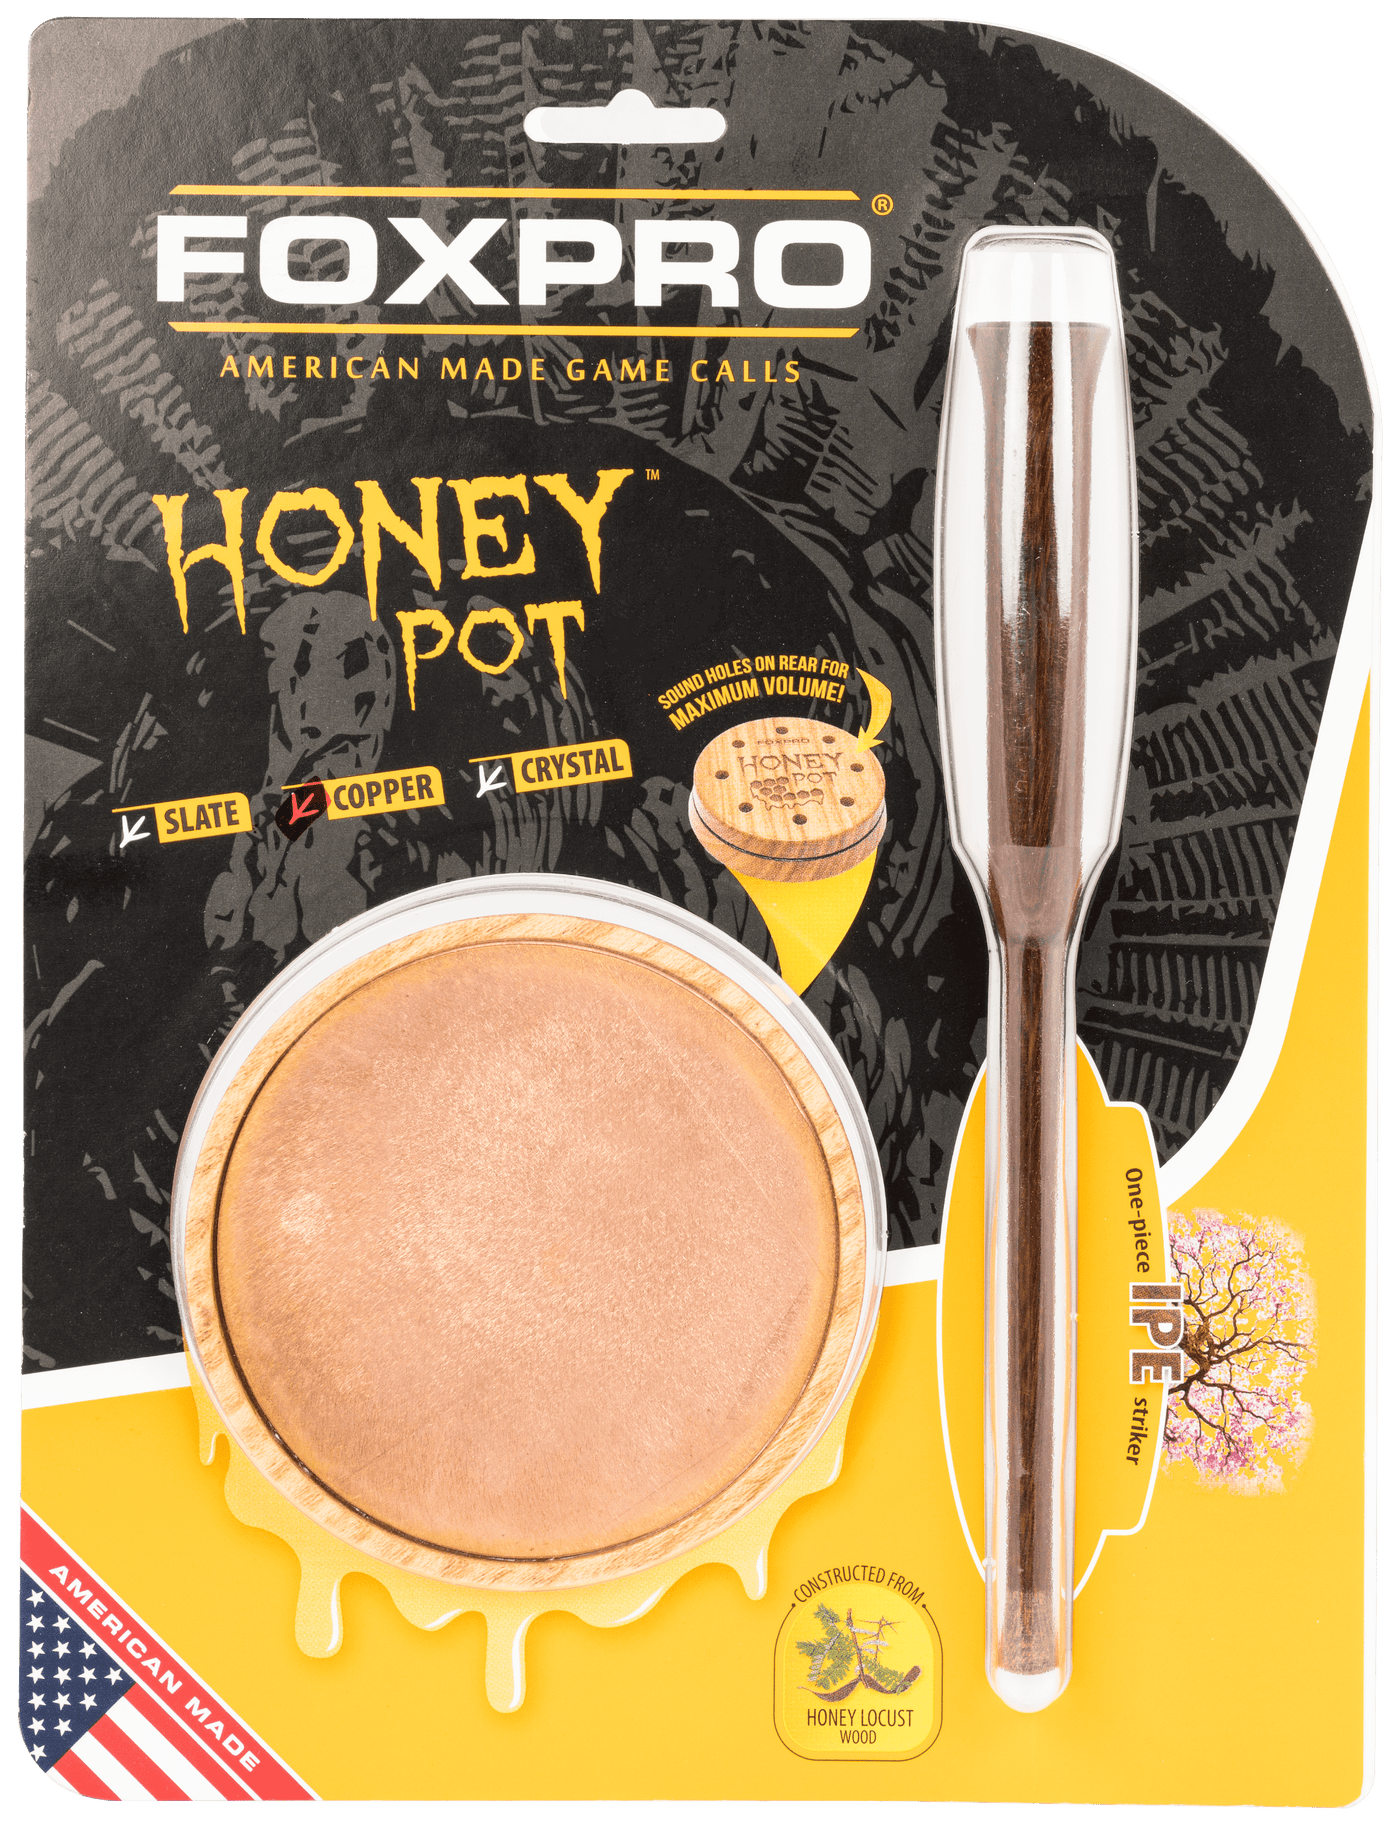 Foxpro Foxpro Honey Pot, Foxpro Hpcopper        Honey Pot Tky Copper Hunting